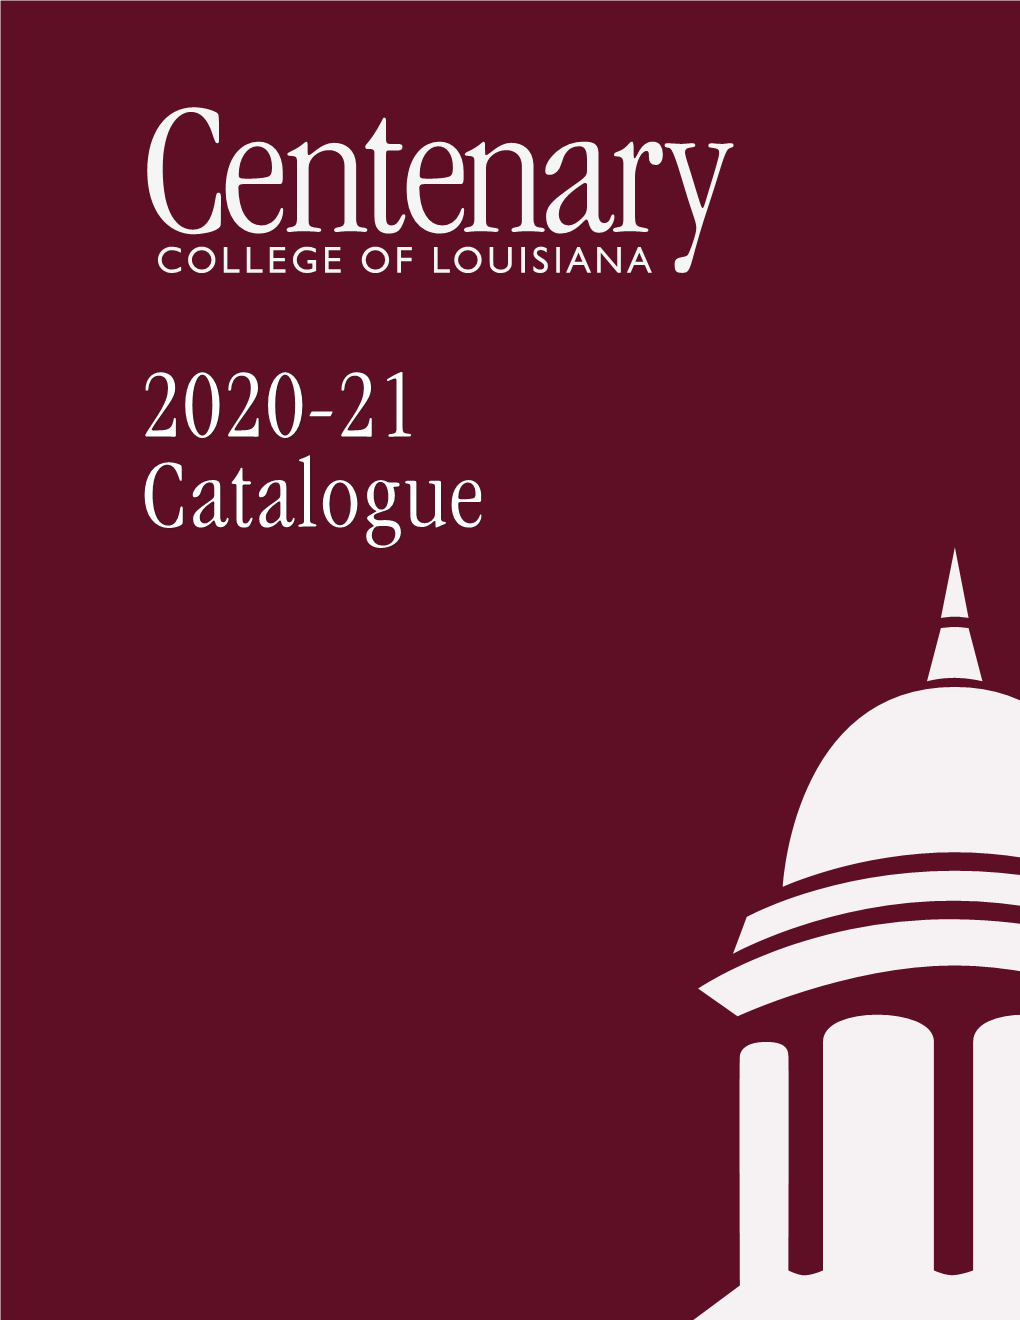 2020-21 Catalogue Centenary College of Louisianacentenary College of Louisiana 1 Undergraduate Catalogue 2020-2021